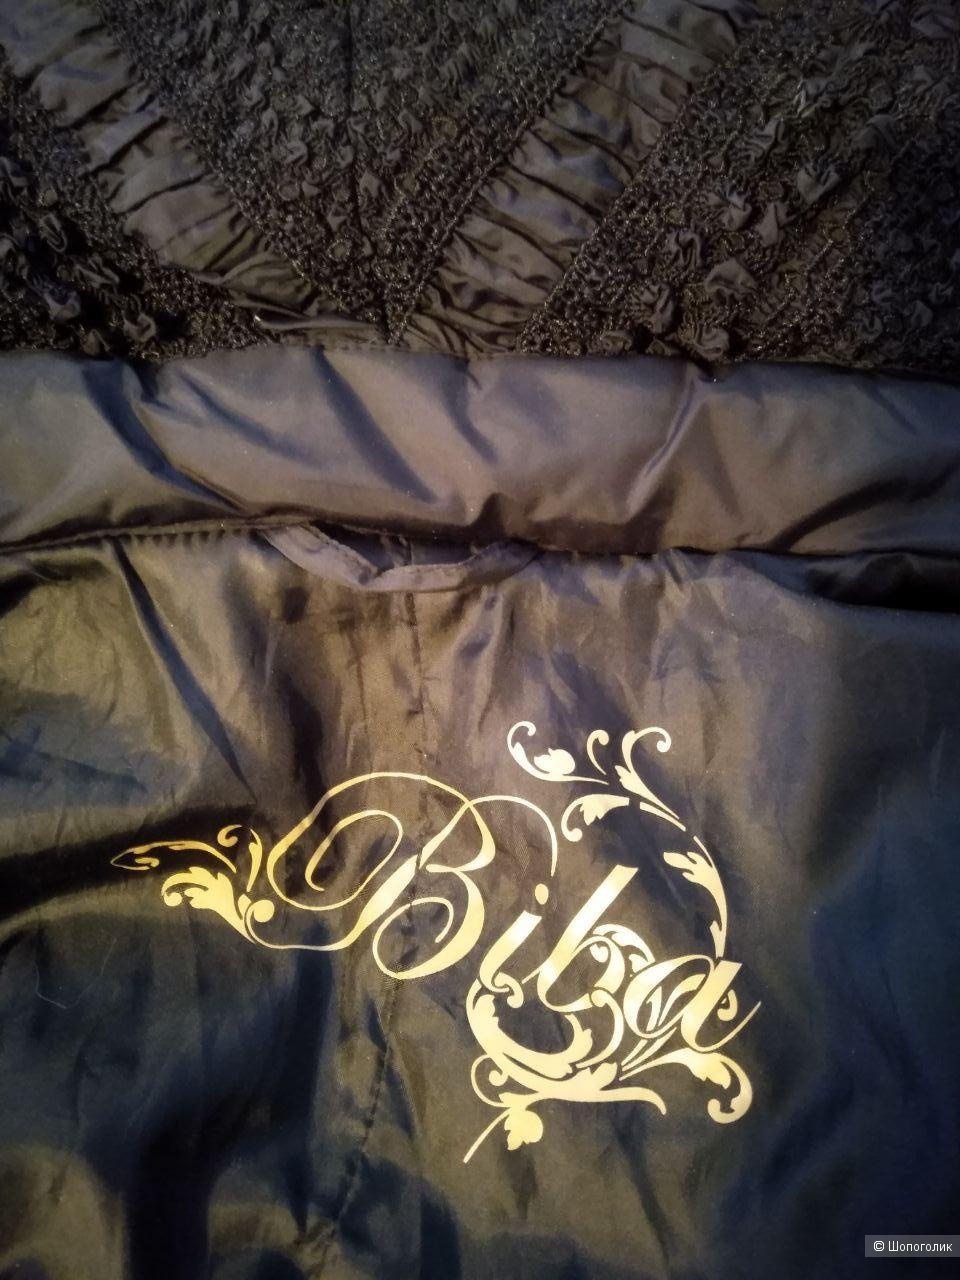 Пуховое пальто Biba, размер 48